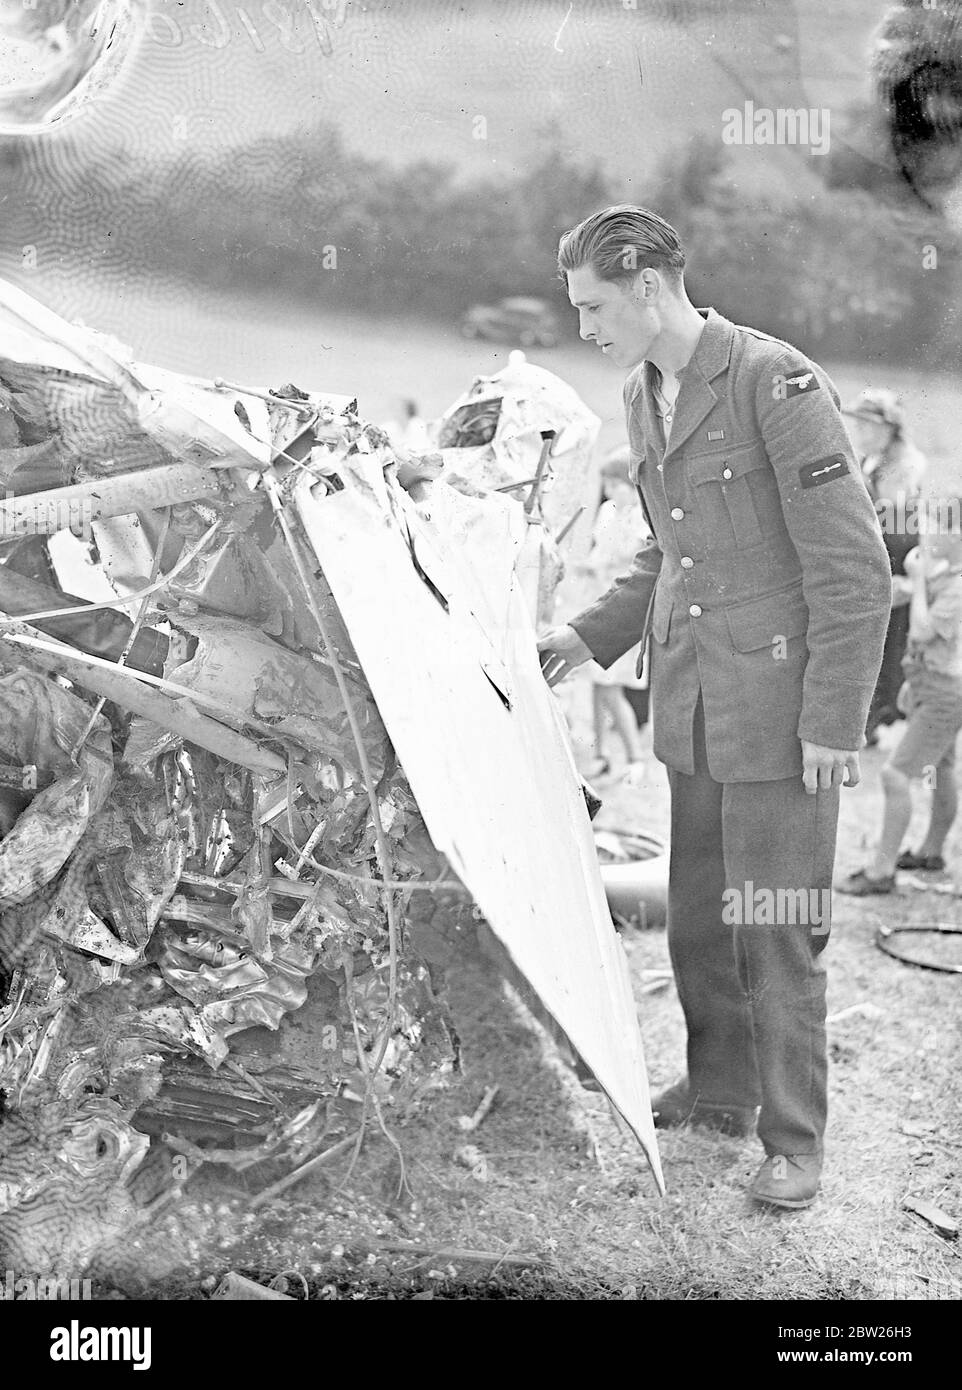 Le pilote et l'observateur s'évadent en parachute depuis l'avion de la RAF près de Speen. L'équipage de deux personnes s'est échappé par parachute lorsque le bombardier RAF s'est écrasé dans une colline près de Speen, Buckinghamshire, après avoir manqué d'essence. L'accident s'est produit à seulement 800 mètres de l'auberge Plough, une maison publique tenue par Mme Ridgloy, l'ancienne Miss Ishbel Macdonald. Le pilote et l'observateur ont atterri à 2 miles de distance, mais ils ont tous deux marché jusqu'à la même maison pour obtenir de l'aide. Photos, le chef de l'aviateur L A C Miller, l'observateur, regardant l'avion nausérage dont il s'est échappé par parachute. 2 août 1938 Banque D'Images